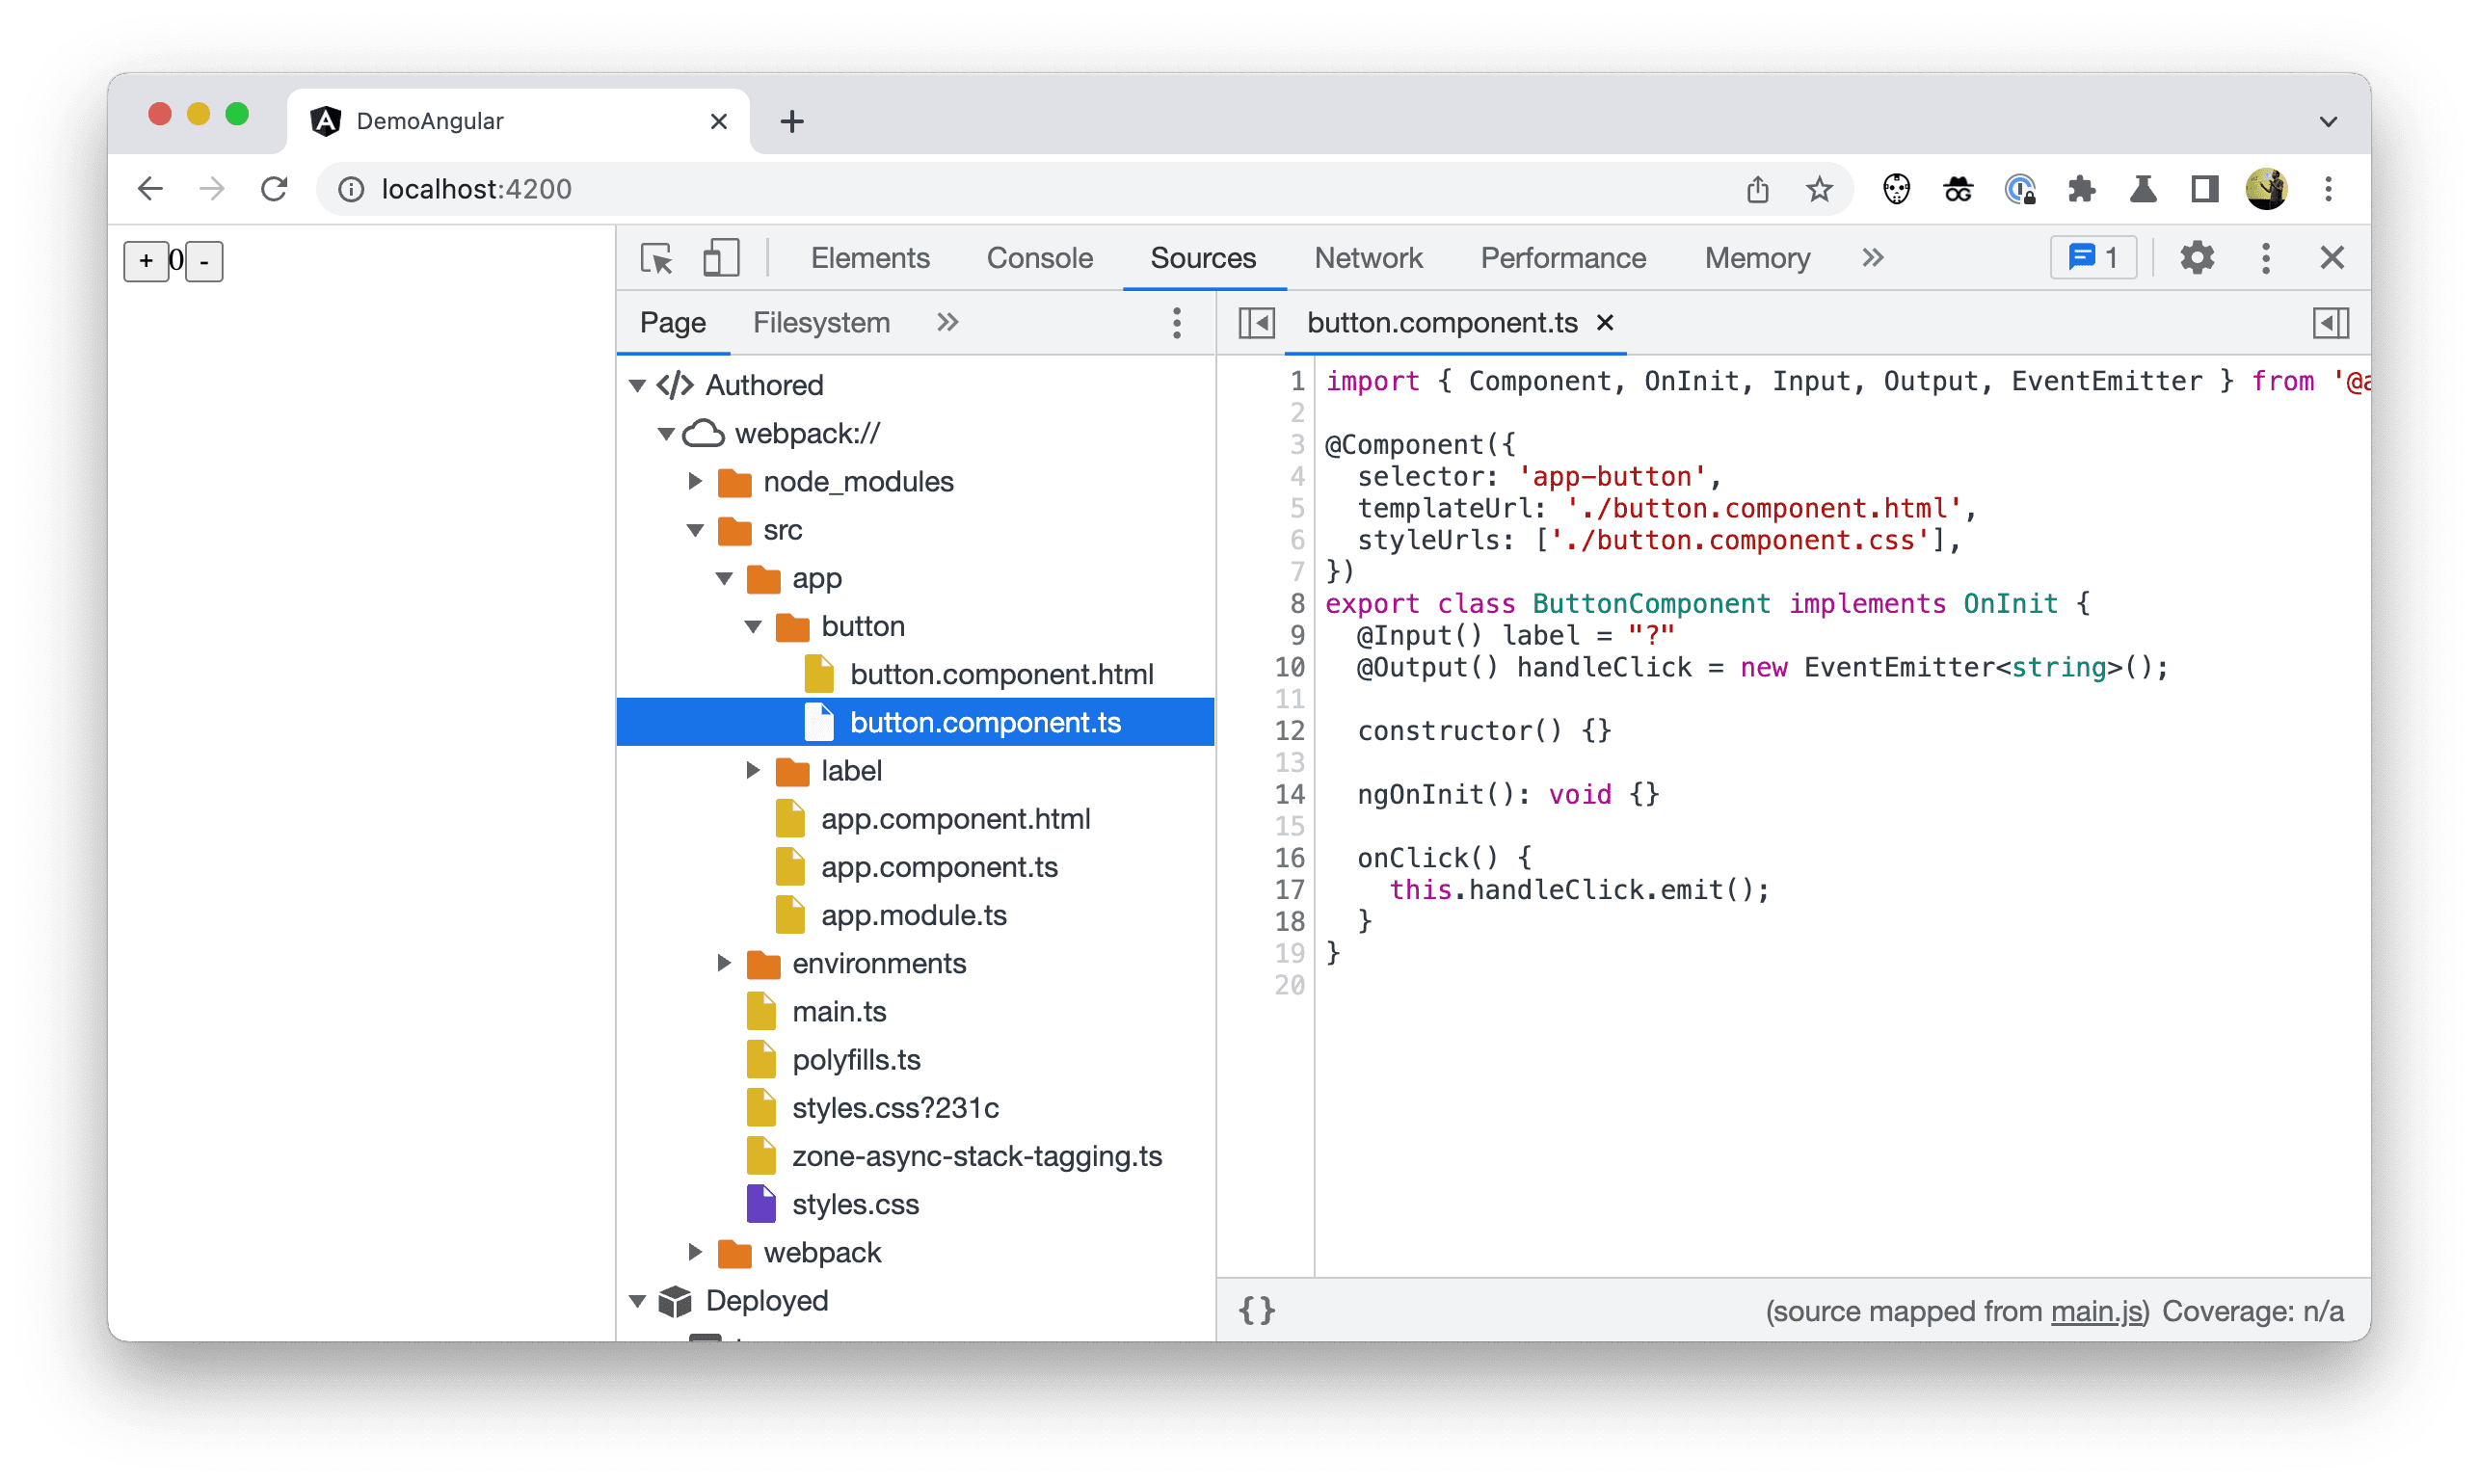 Chrome 開發人員工具中的檔案樹狀結構螢幕截圖，顯示已編寫的程式碼。